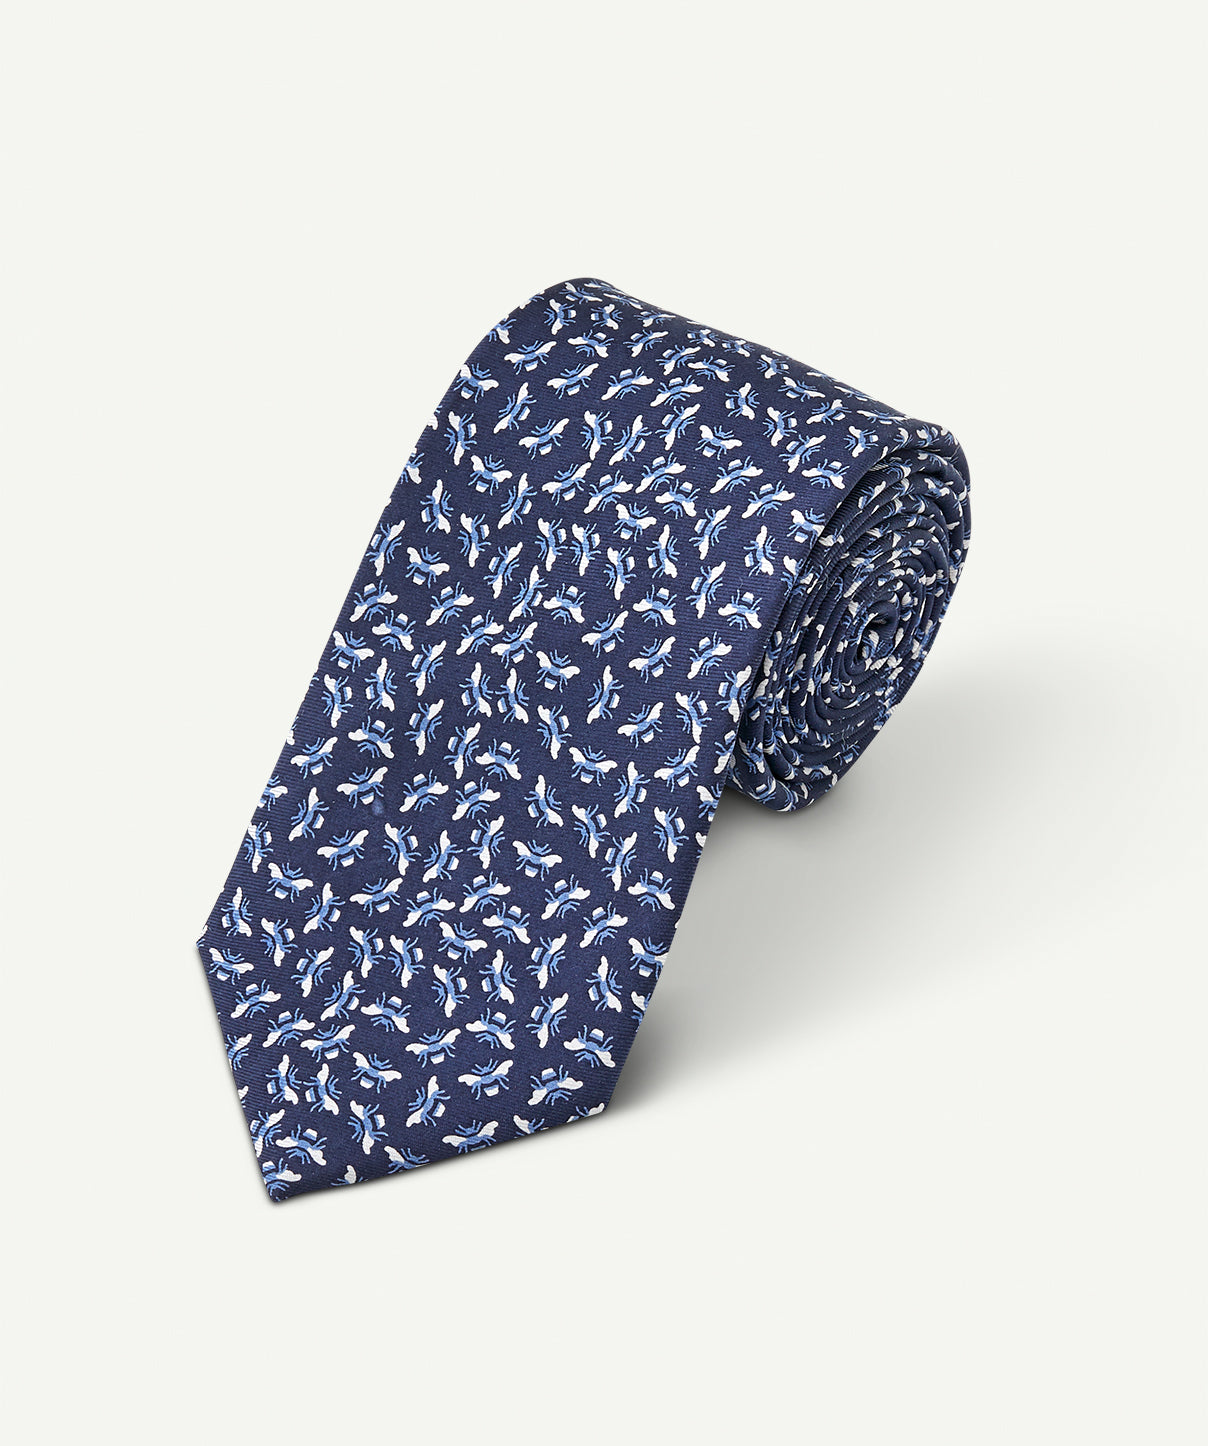 Men's Ties - Stylish Men's Textured & Silk Ties - GAZMAN